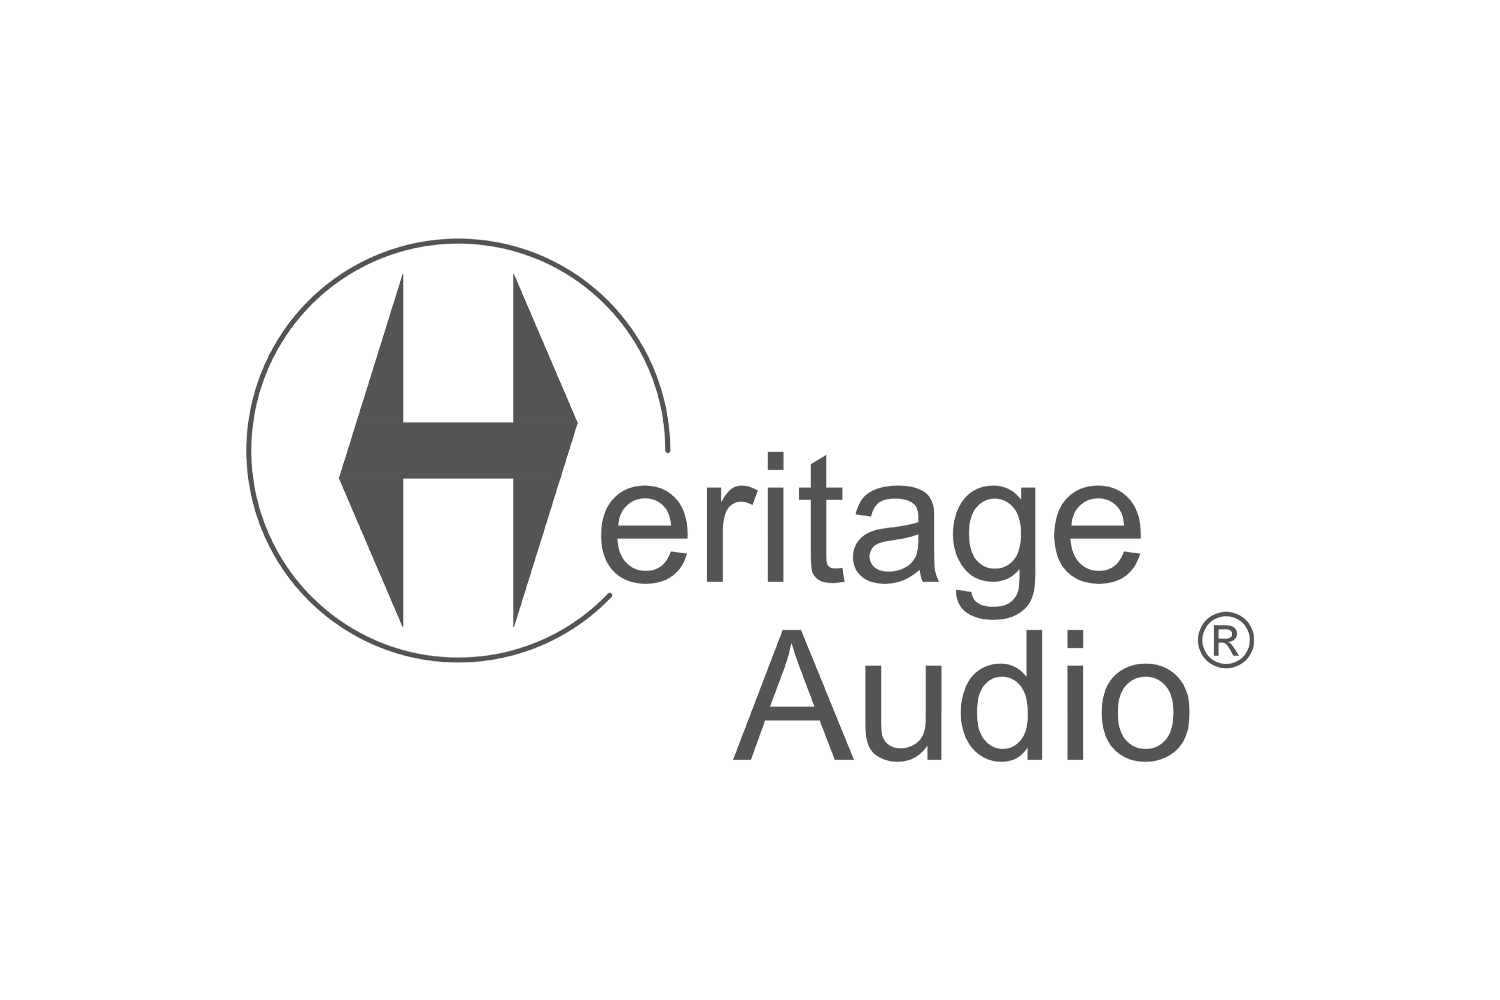 Heritage Audio